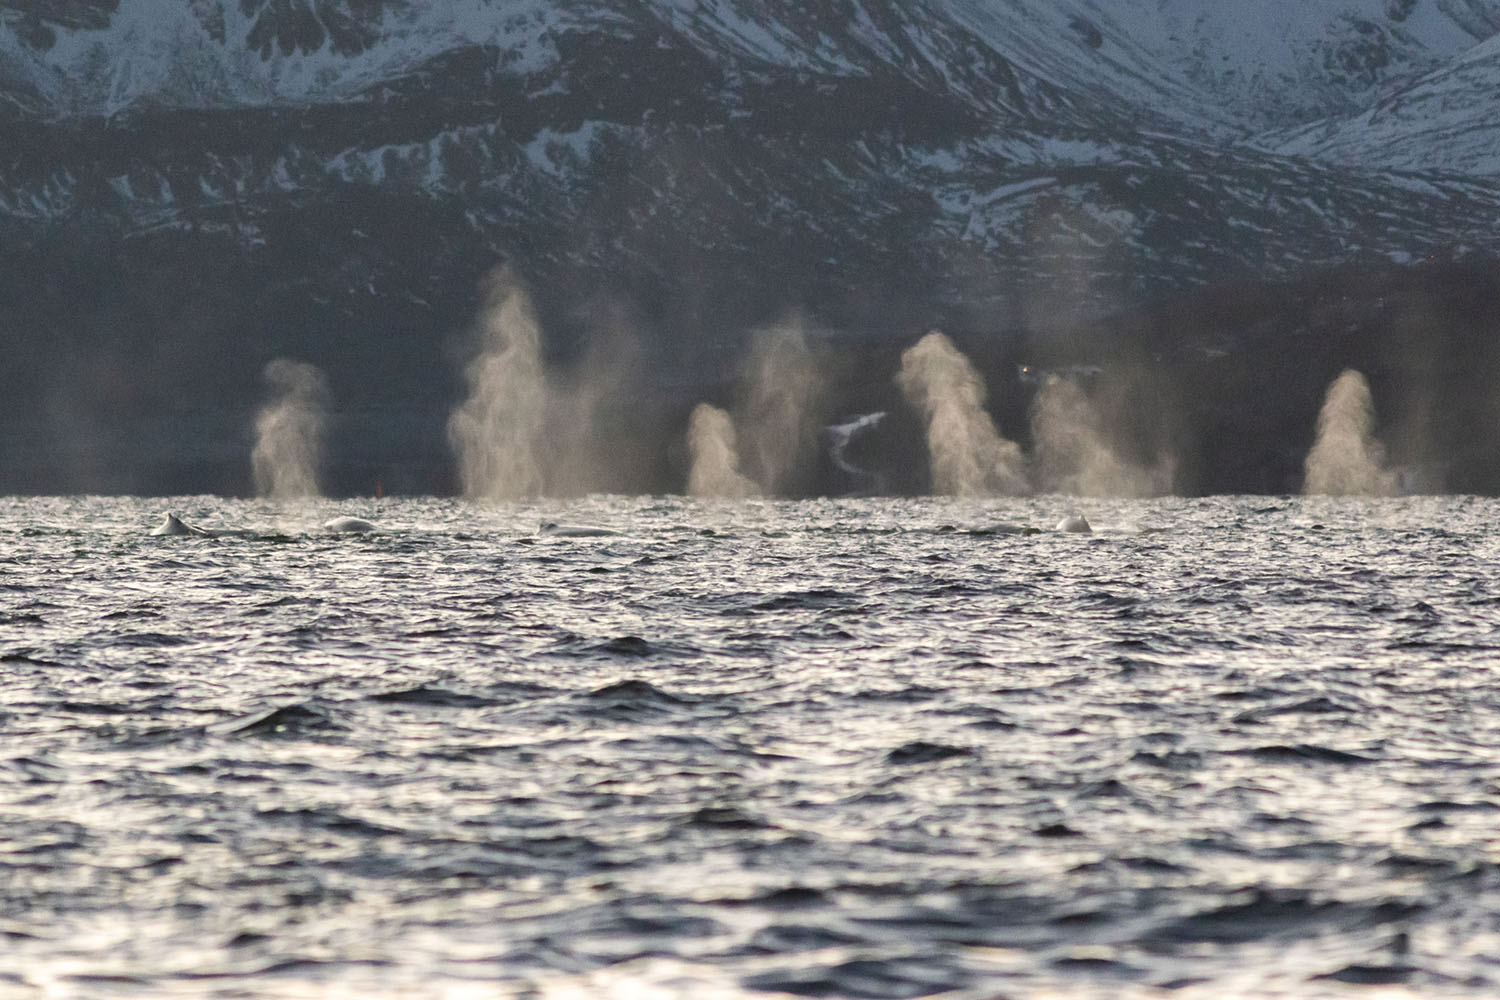 Baleine à bosse observée dans les fjords norvégiens enneigés lors des lumières hivernales lors de la Croisière scientifique à la voile sur les orques et baleines à bosse de Norvège -copyright SailNorway